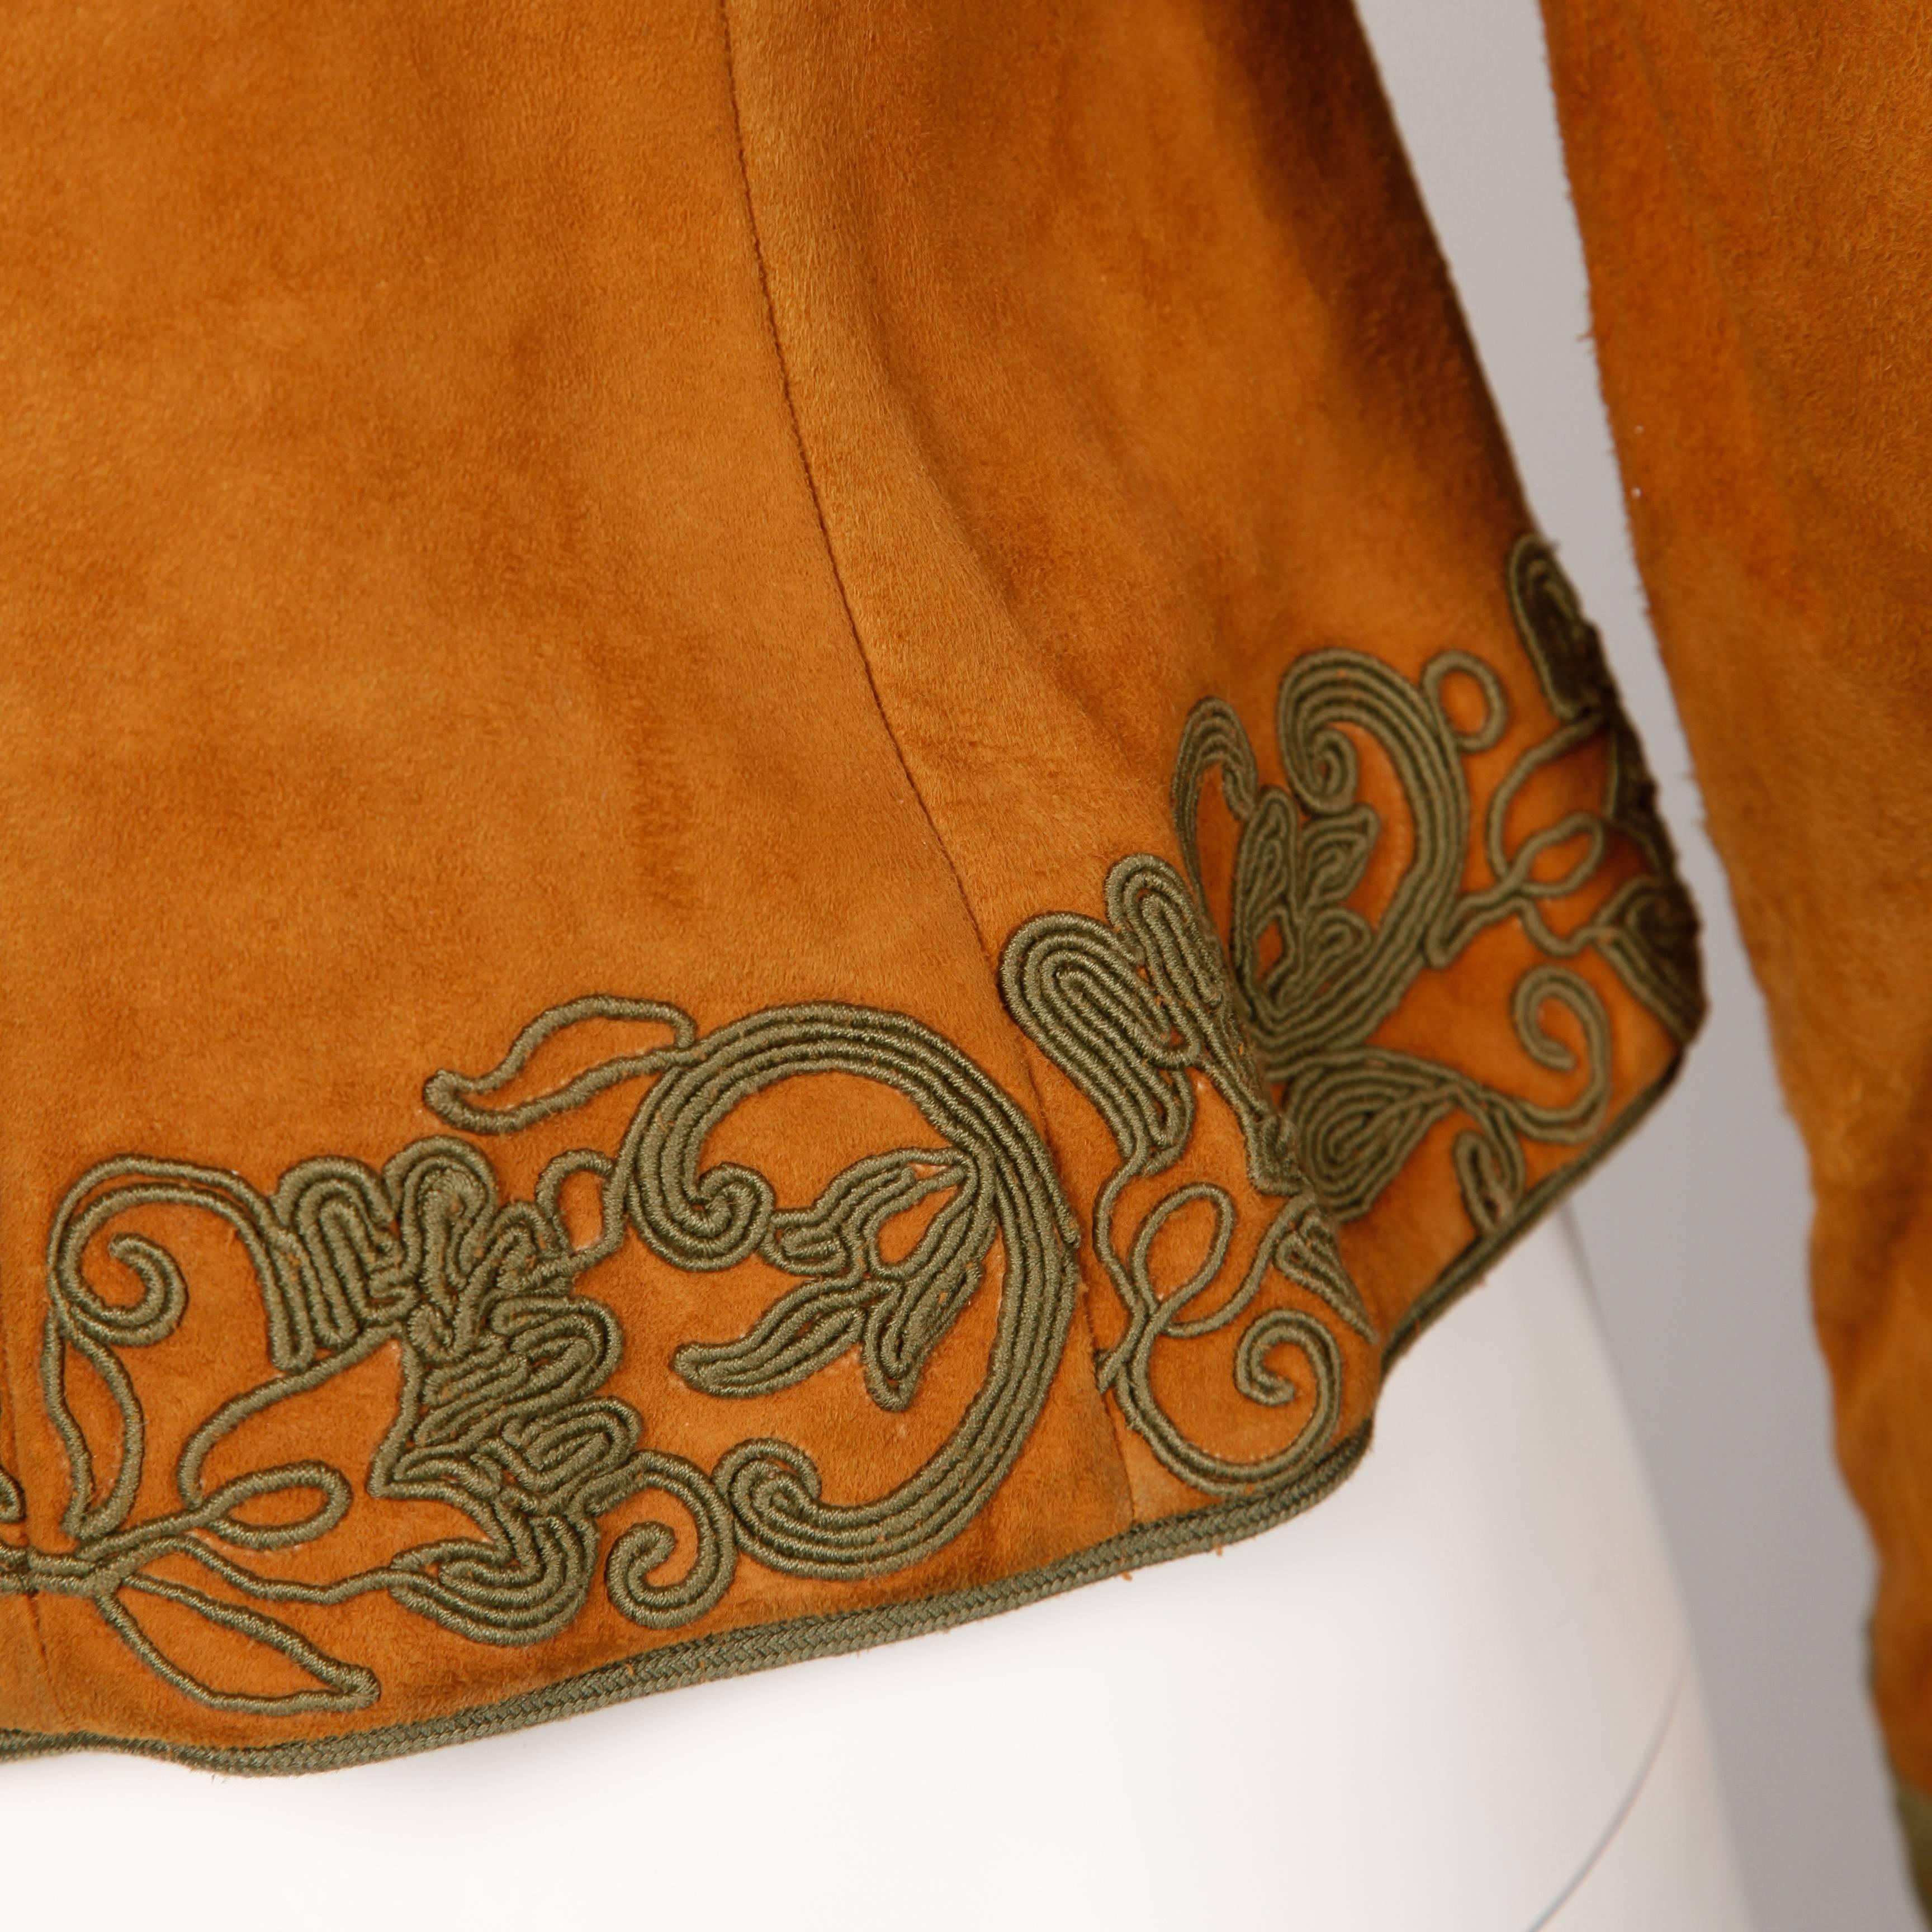 Oscar de la Renta Vintage 1970s Suede Leather Jacket with Green Cord Embroidery 5